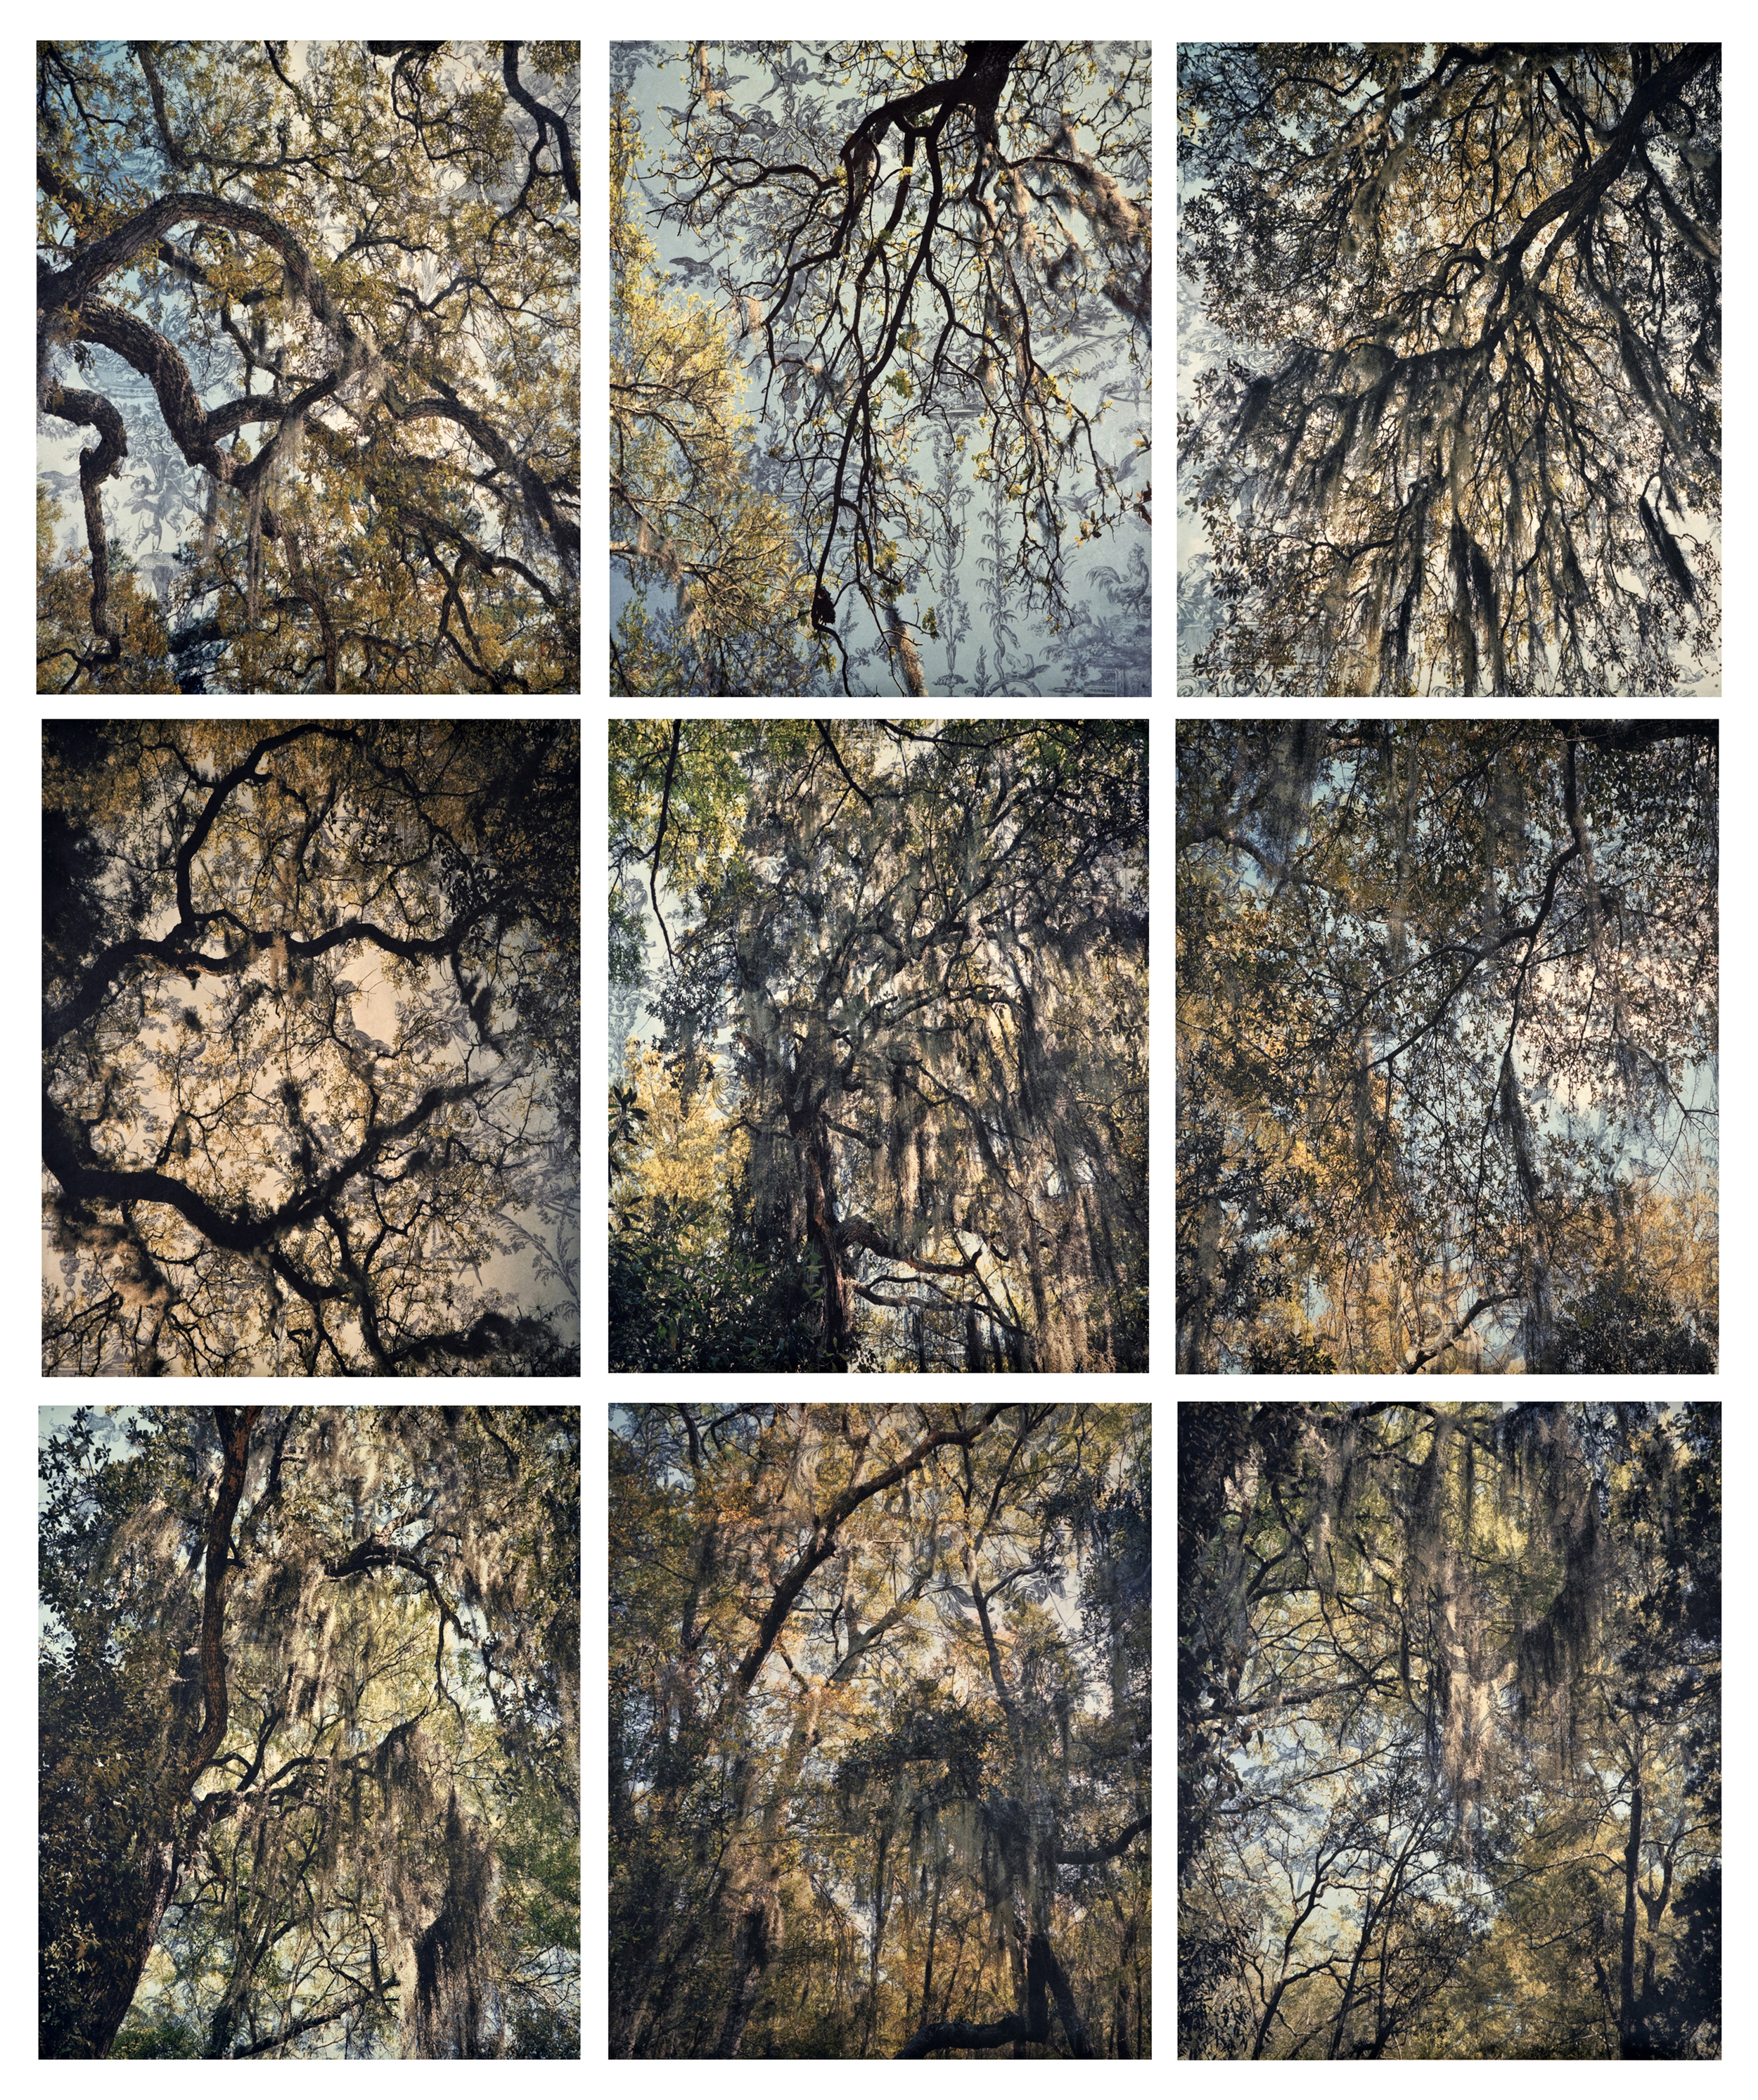    Spanish Moss Toile Grid, &nbsp;2010   Archival digital pigment print on kozo shi, wallpaper, wax, 9 - 24" X 20"   78.5” X 66.5"  